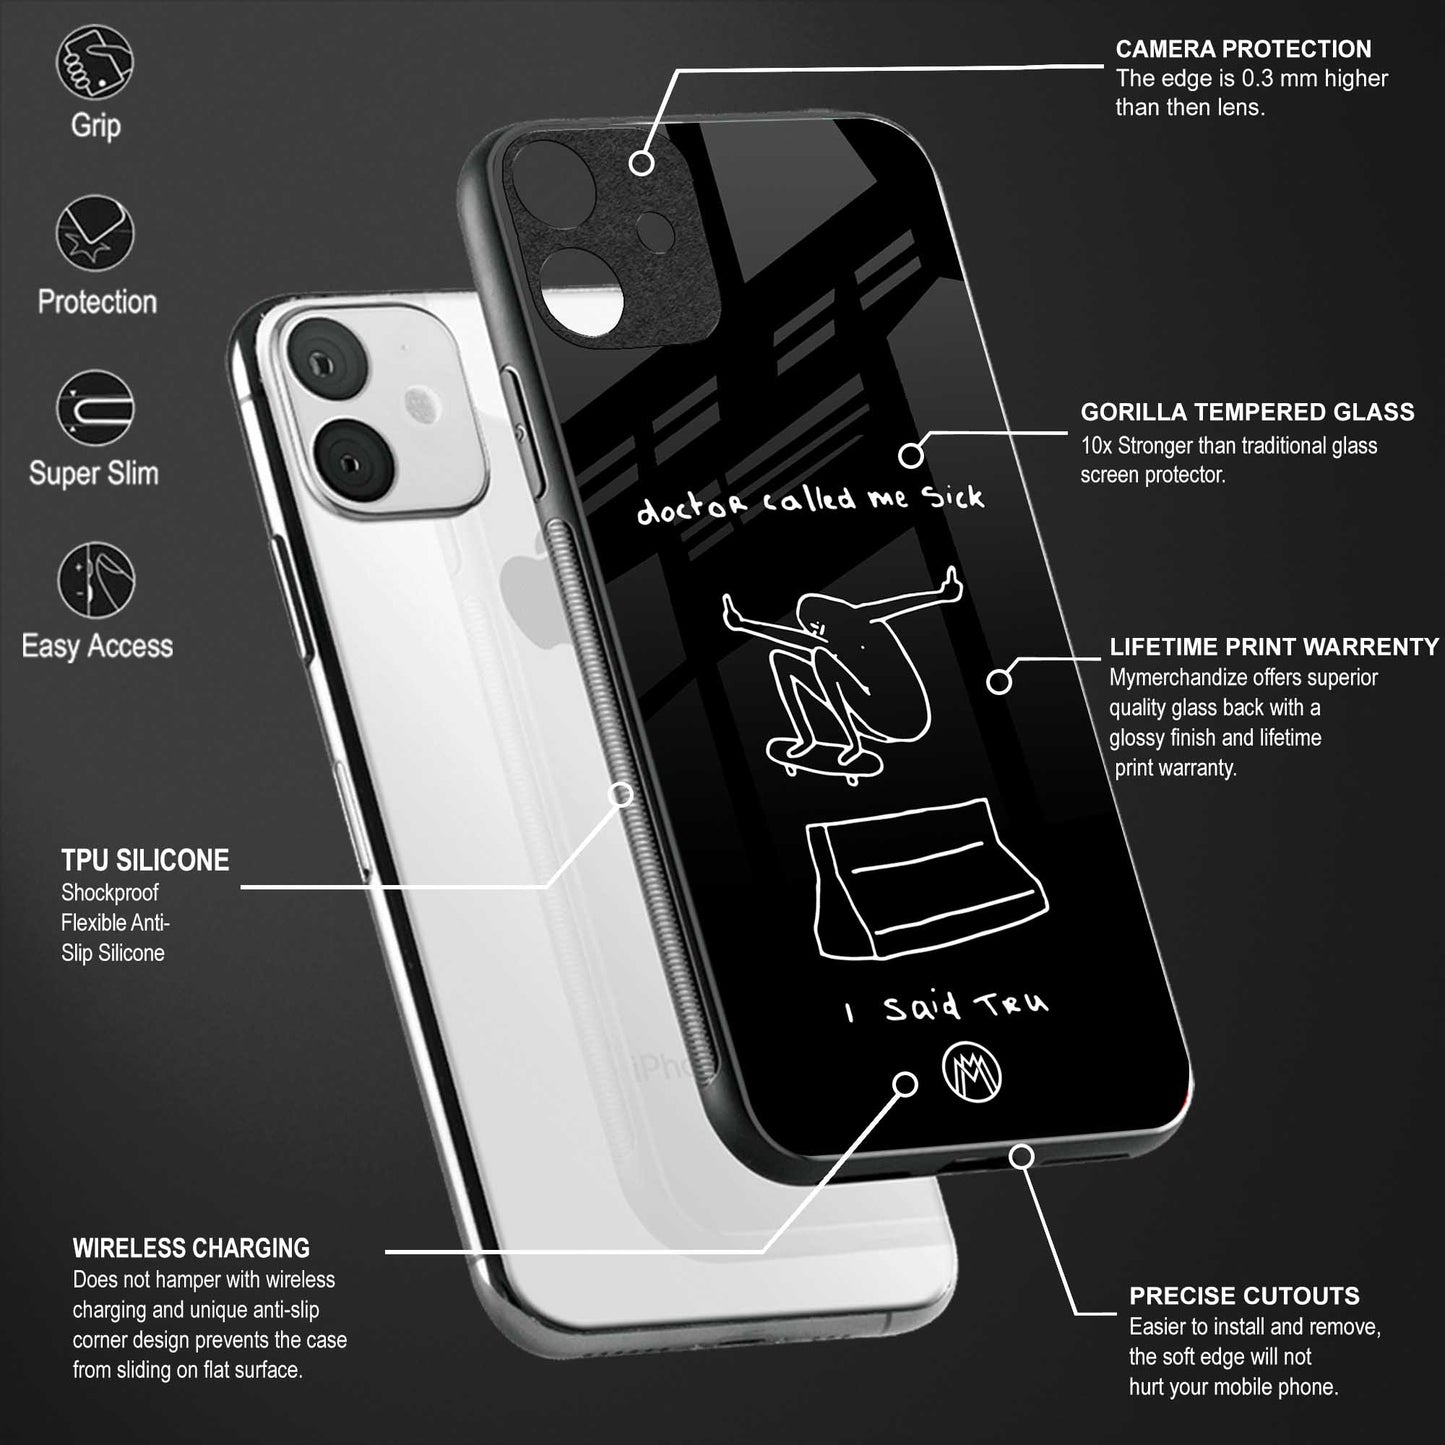 sick skateboarder black doodle back phone cover | glass case for vivo y22